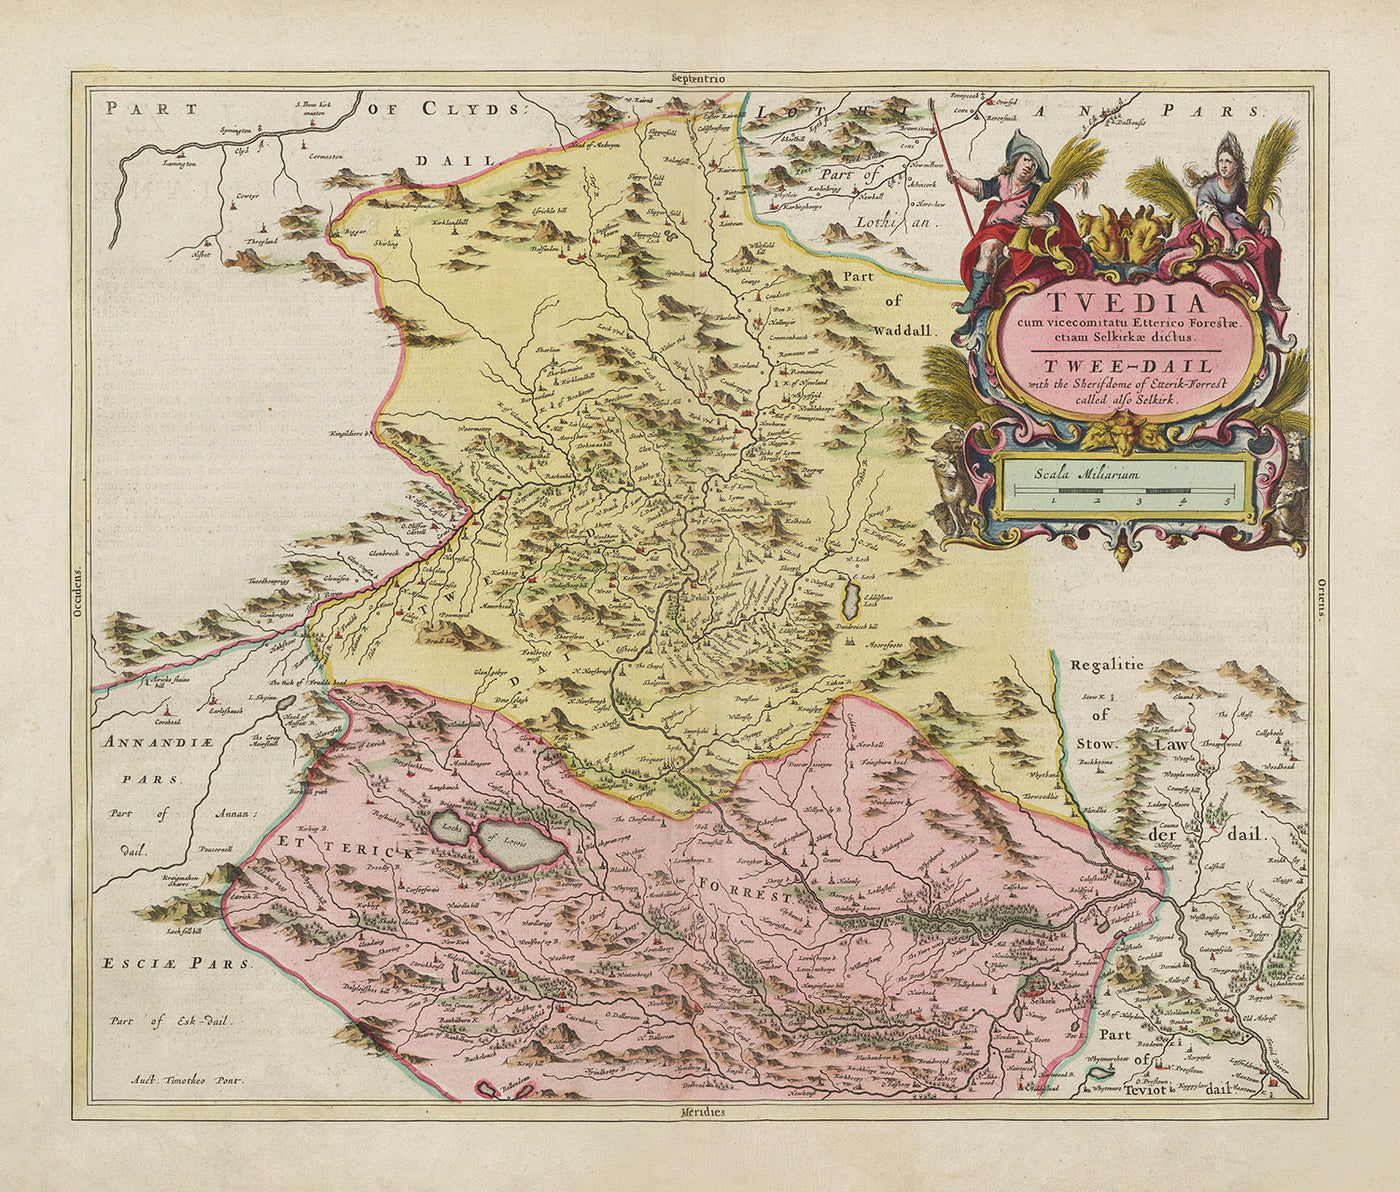 Alte Karte von Selkirkshire im Jahr 1665 von Joan Blaeu - Selkirk, Lindean, Darnick, Fluss Tweed, Peebles